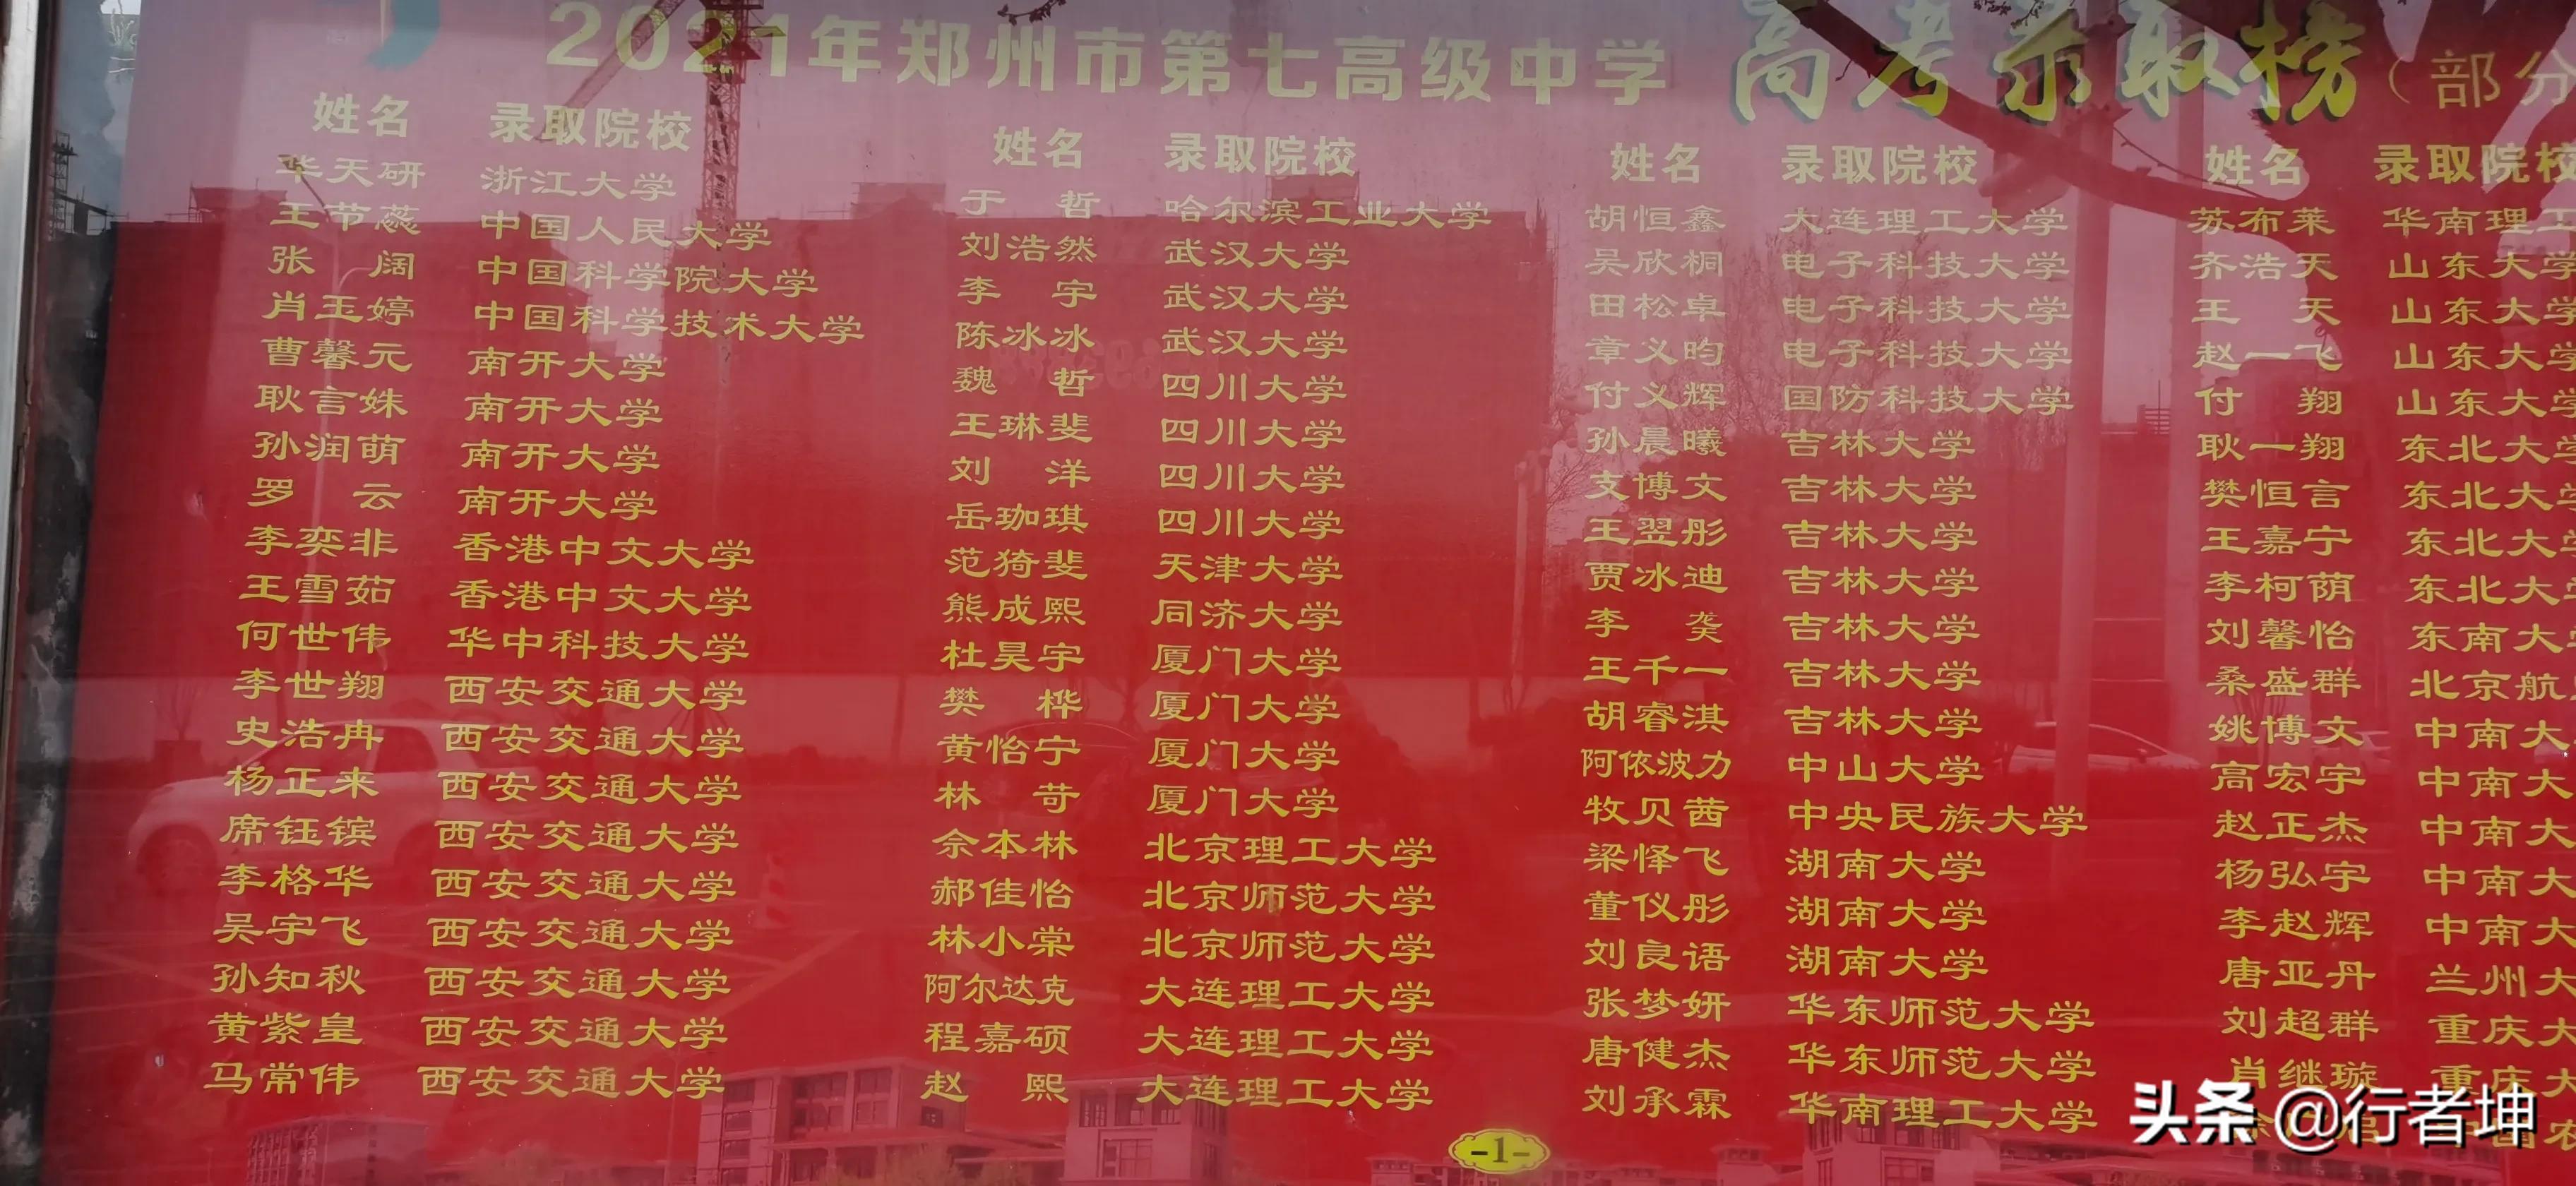 省级示范性高中小三甲之一的郑州七中报考指南